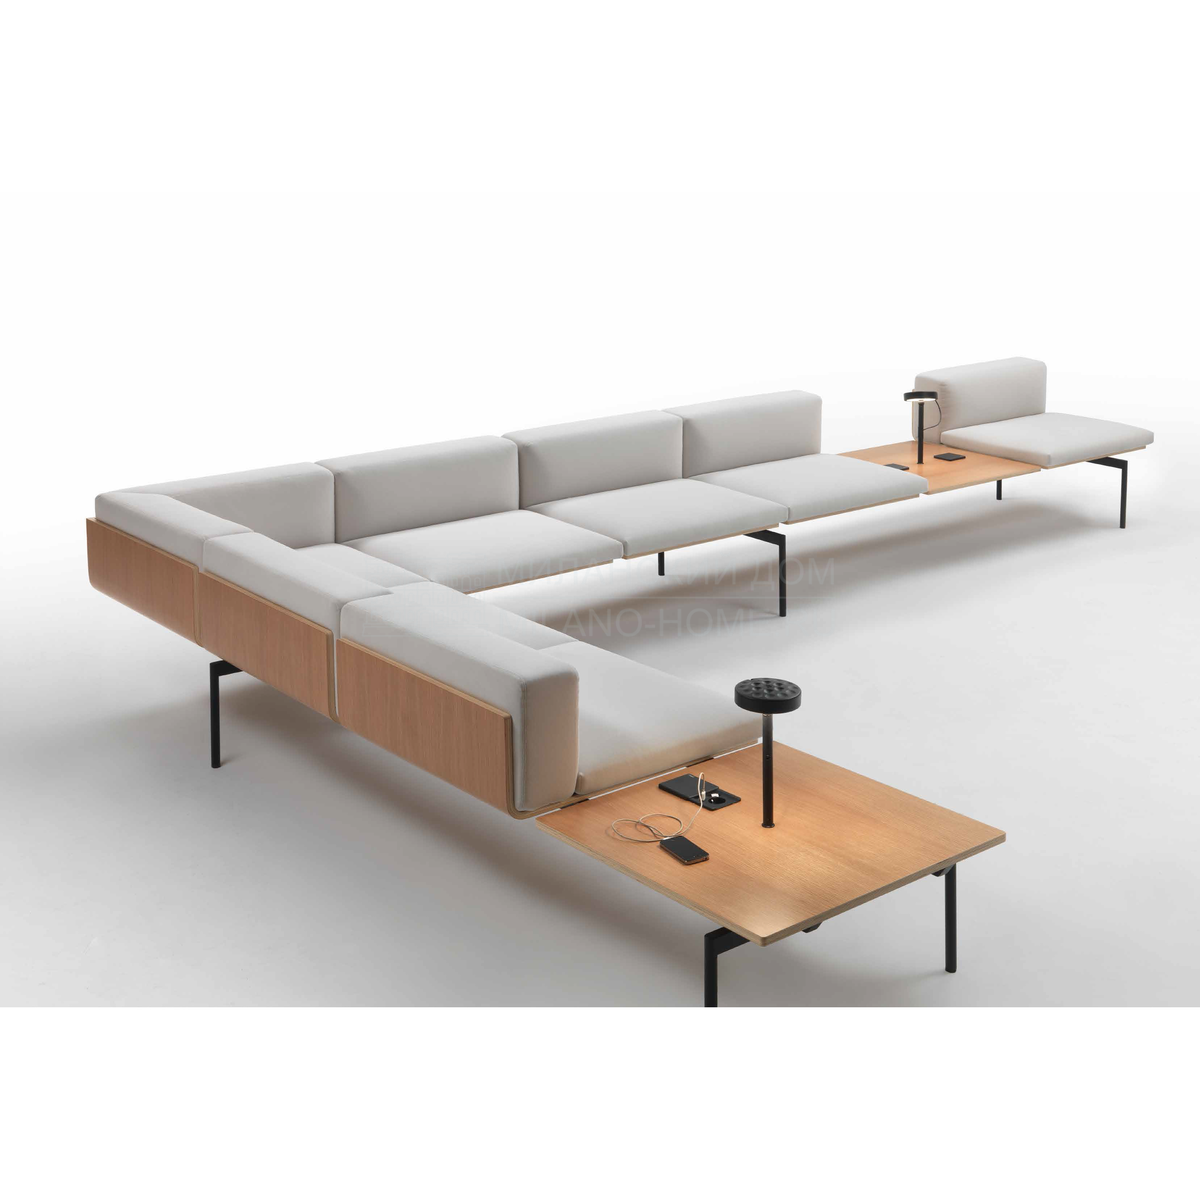 Модульный диван H-Sofa из Италии фабрики GIULIO MARELLI